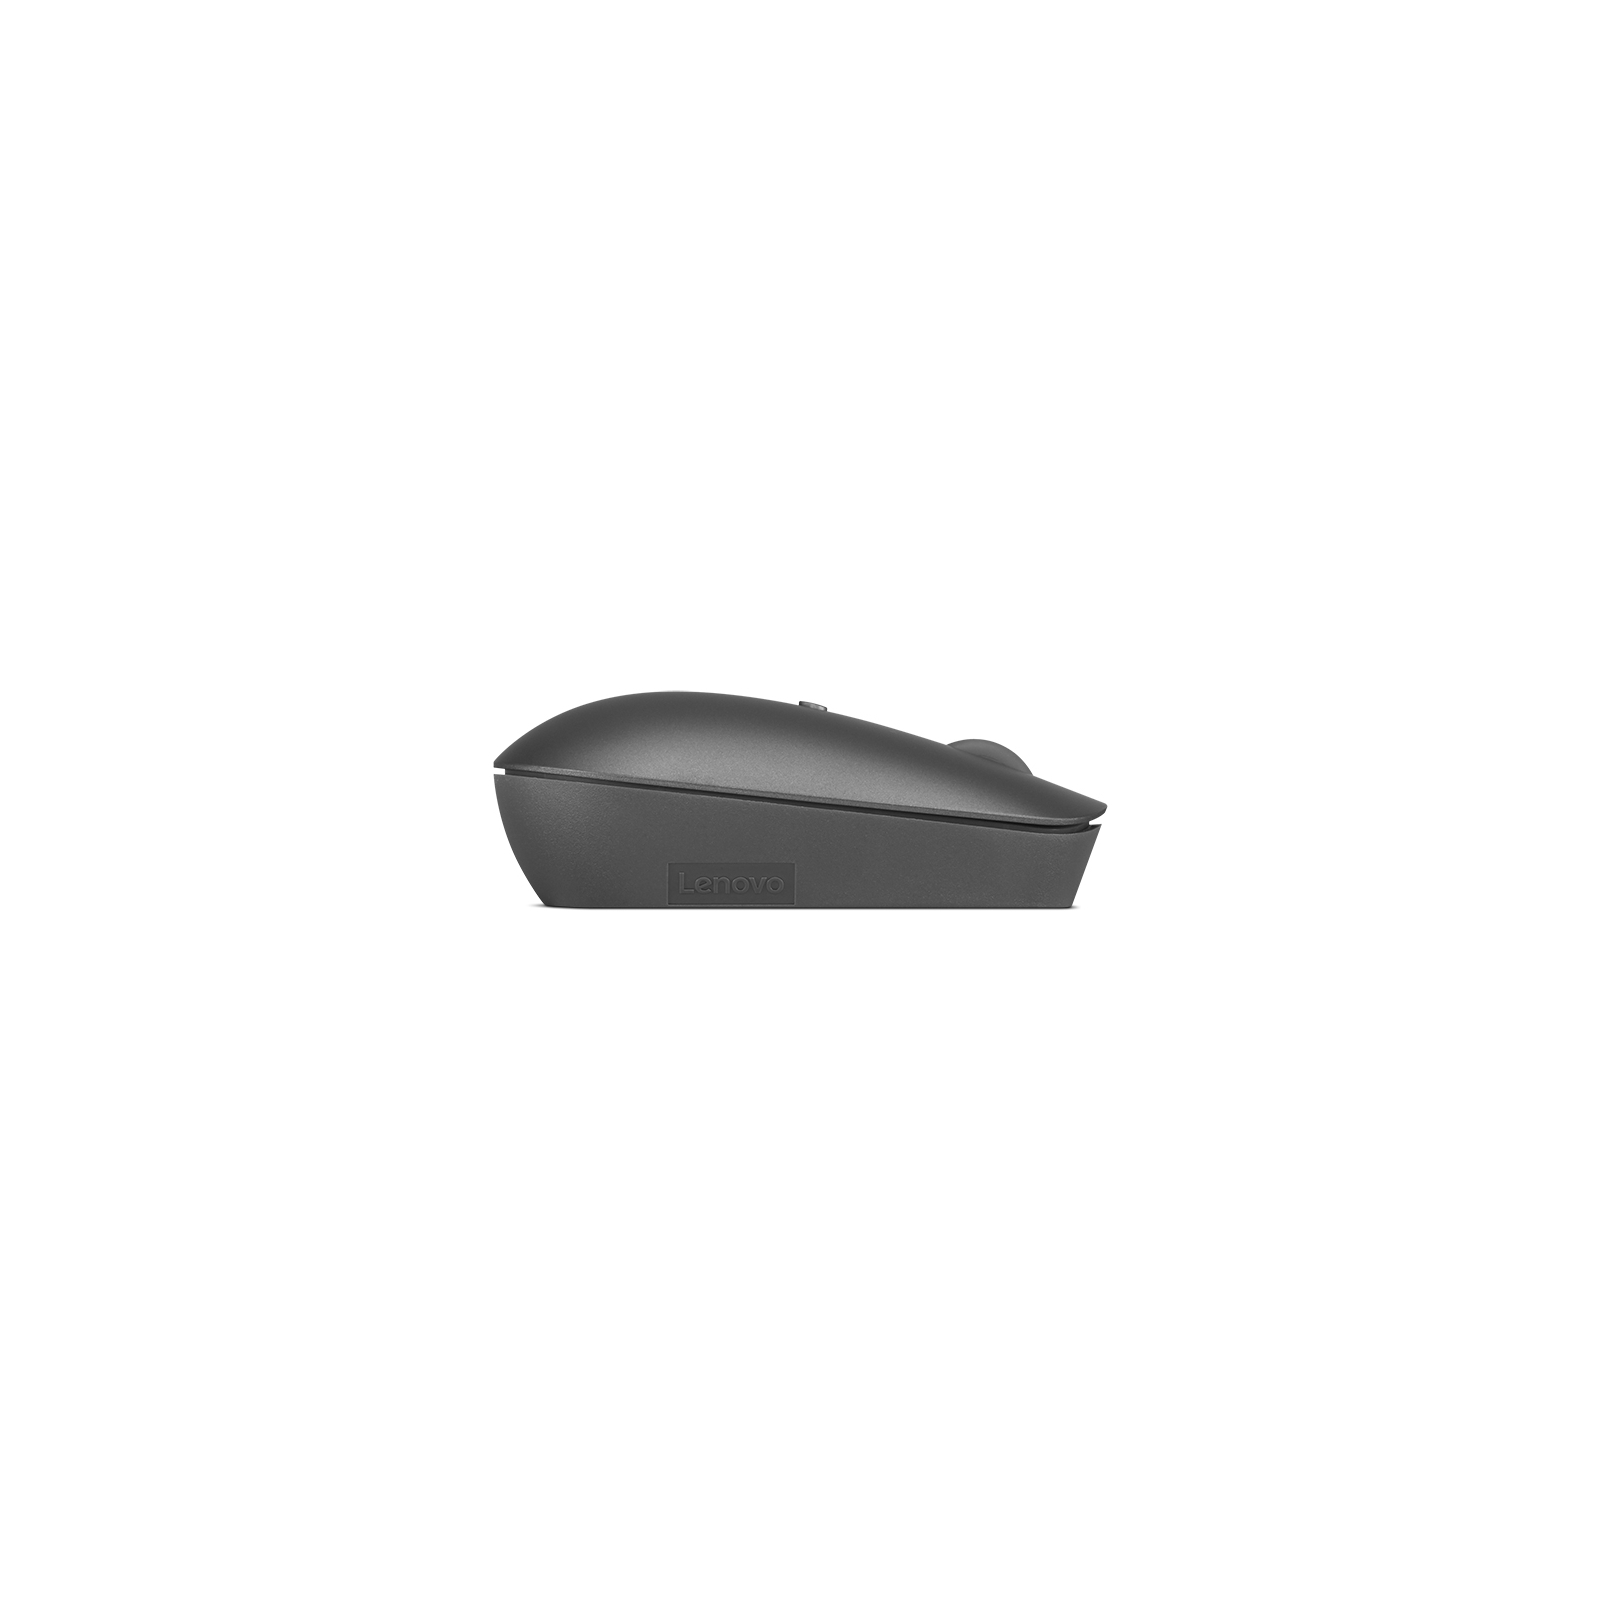 Мышка Lenovo 540 USB-C Wireless Cloud Grey (GY51D20869) изображение 5